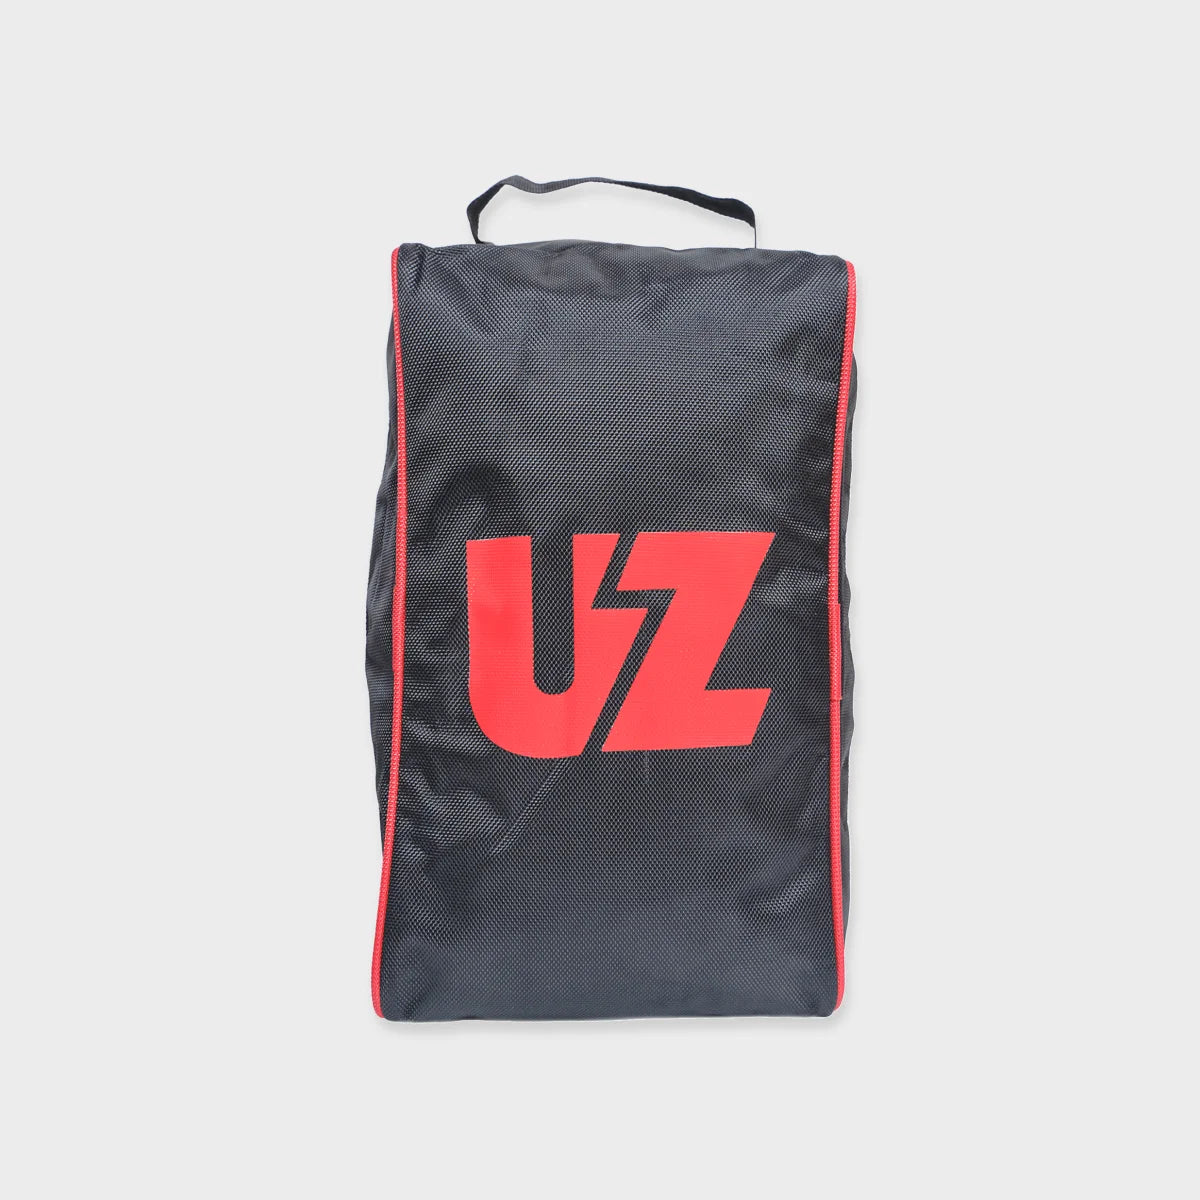 UZ Shoe bag